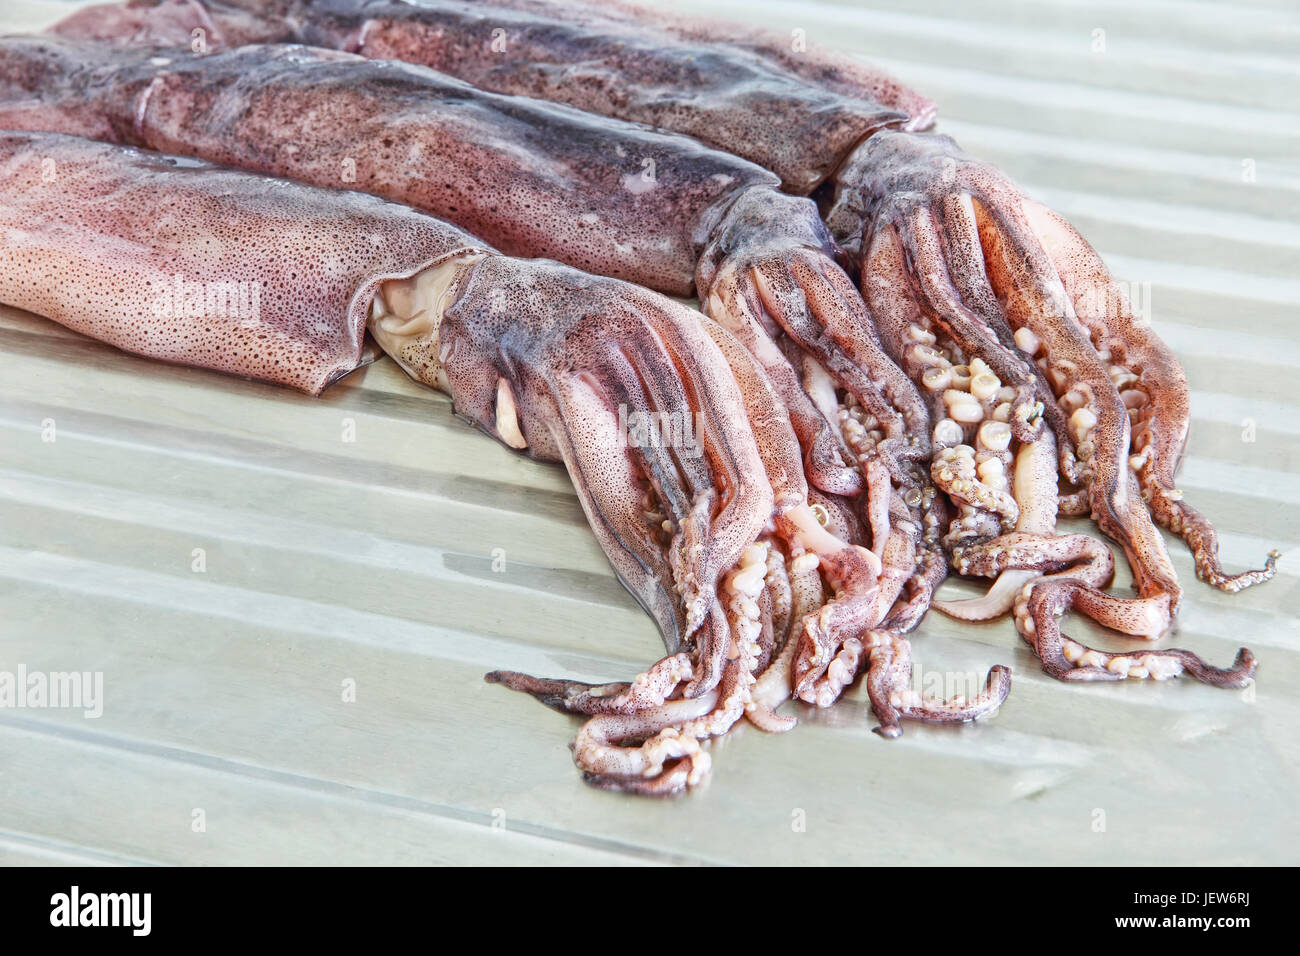 Groupe de matières calamars avec tentacules sur metal table de cuisine prises libre. Banque D'Images